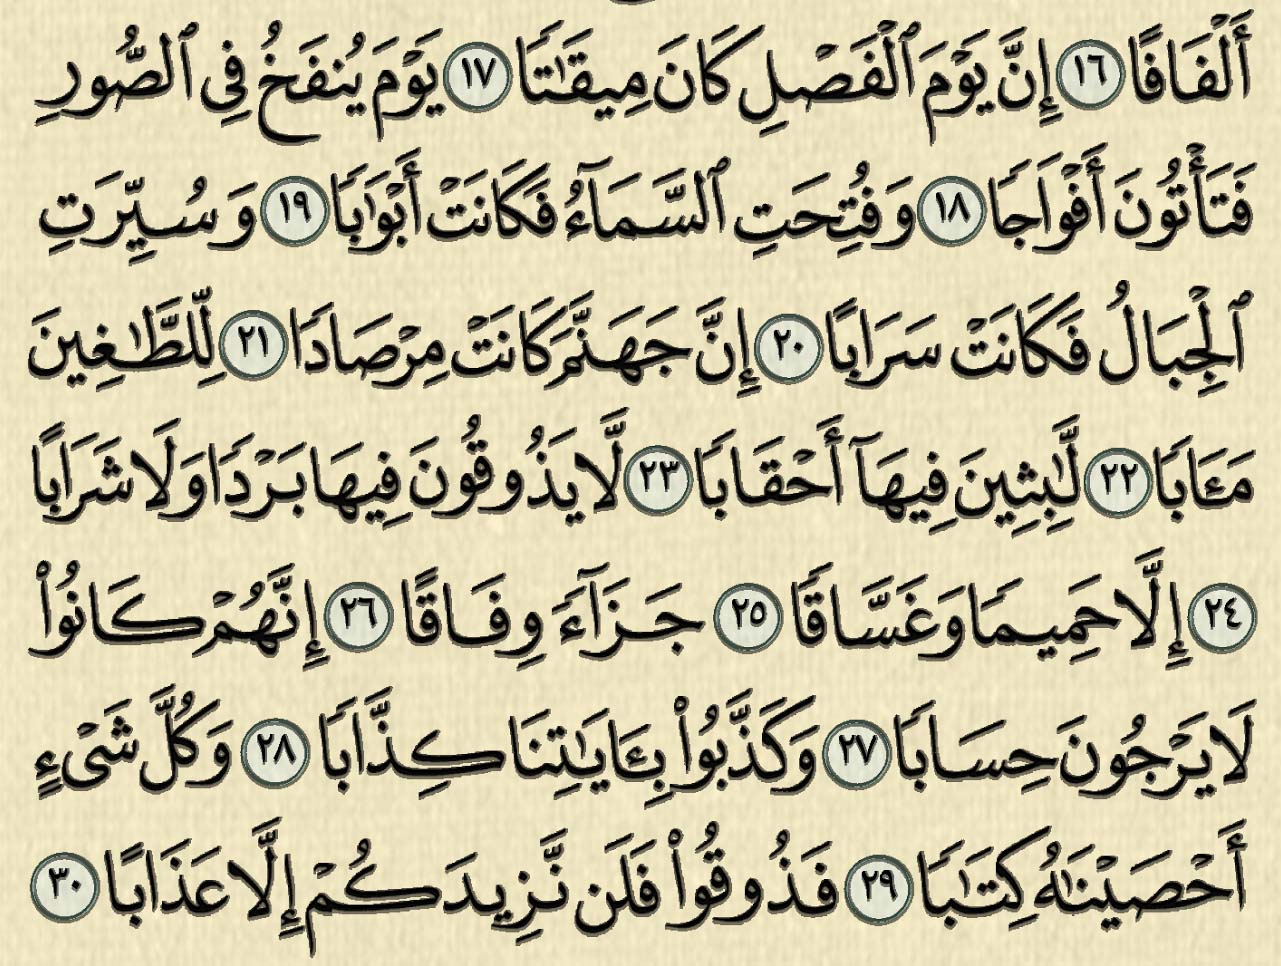 شرح وتفسير سورة النبأ, surah An-Naba